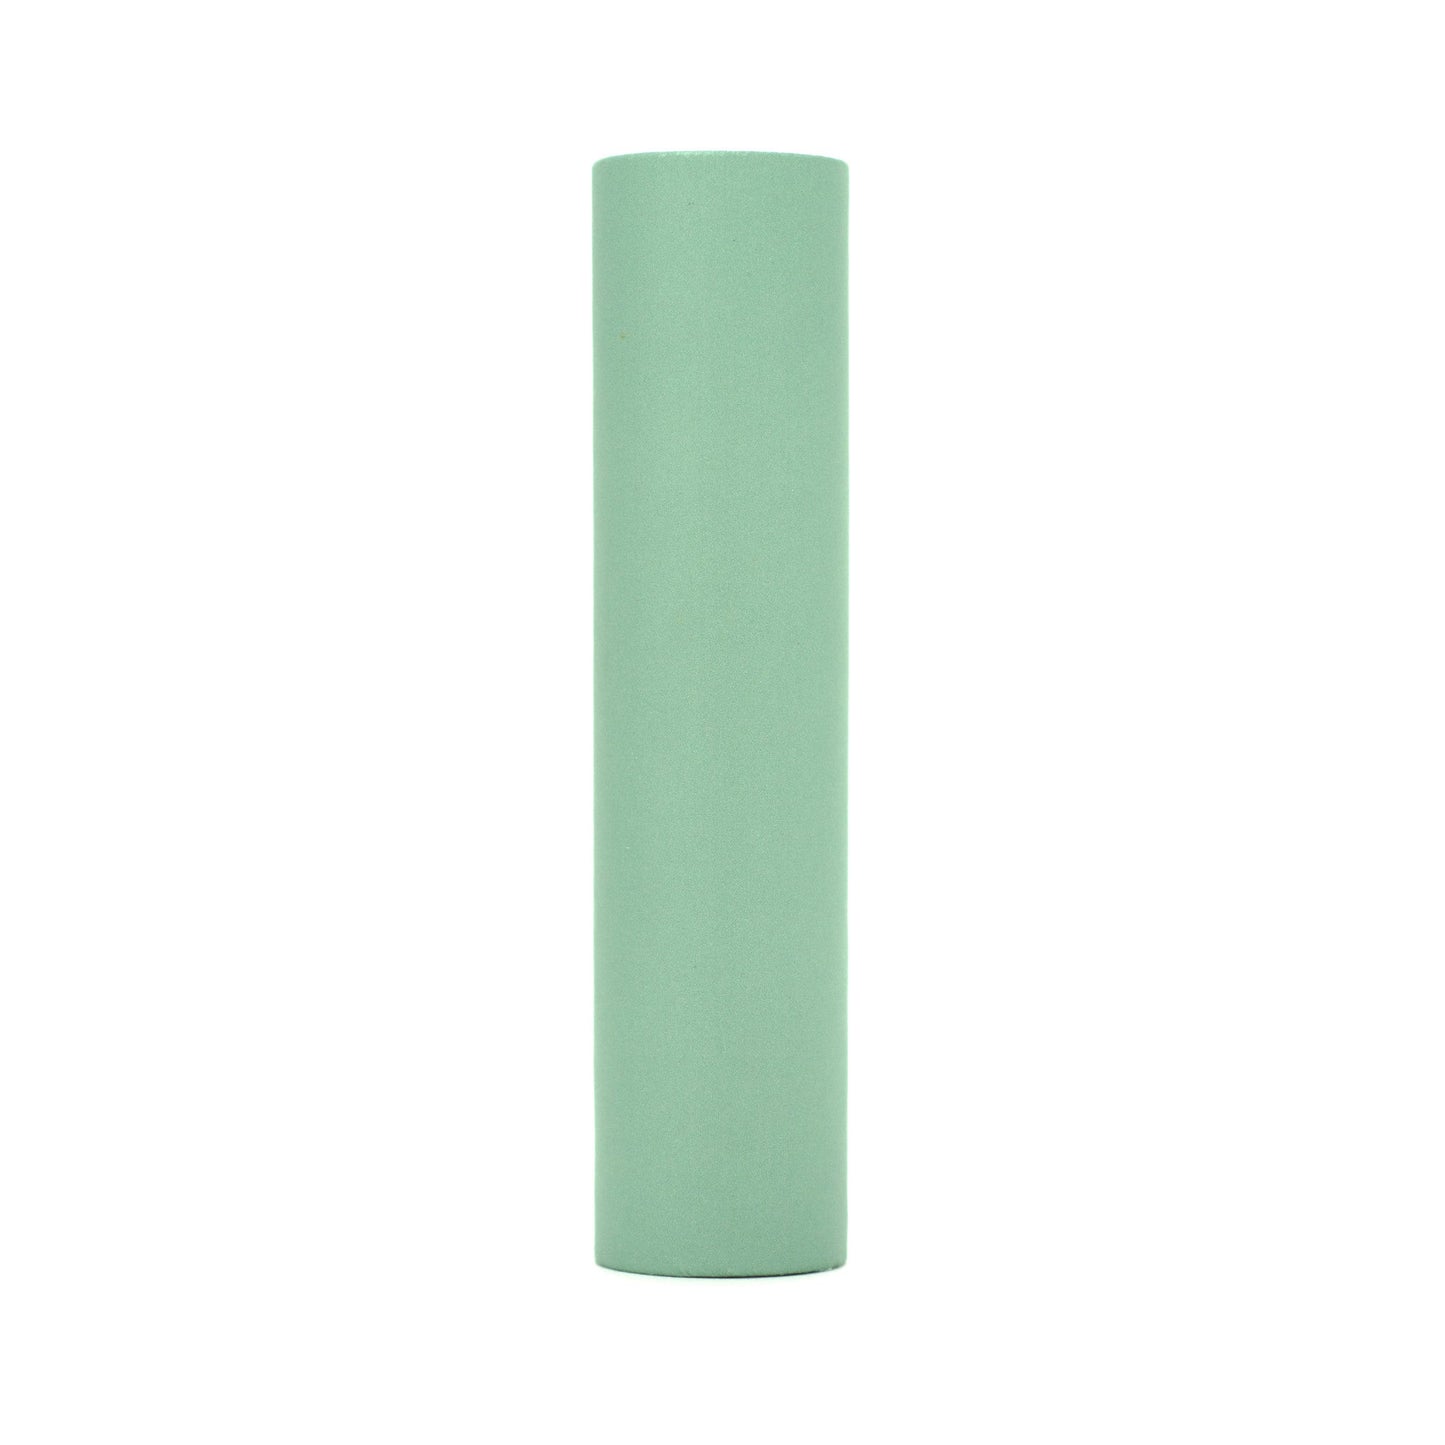 4" kaarskoker® Candle Cover - Solid Color, Candelabra Base